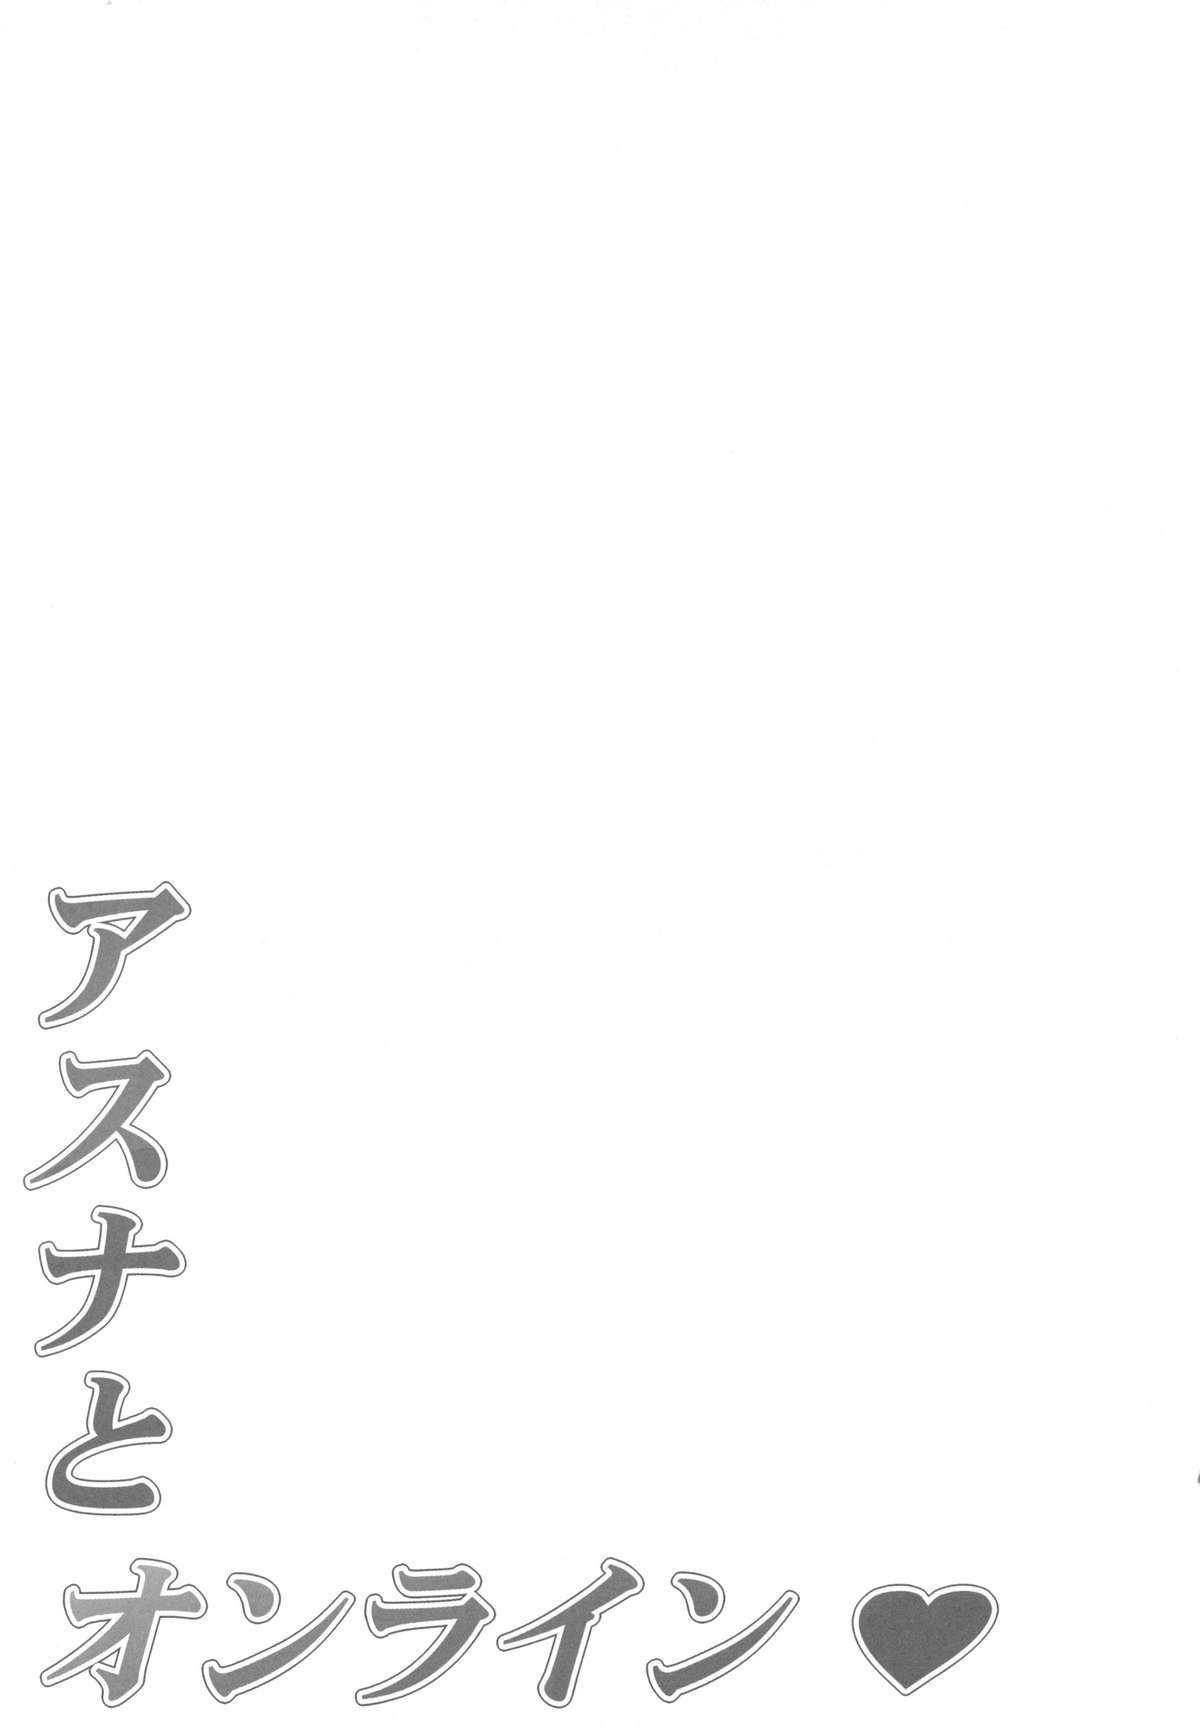 (C82) [Mugenkidou A (Tomose Shunsaku)] Asuna to Online (Sword Art Online) (C82) [無限軌道A (トモセシュンサク)] アスナとオンライン (ソードアート・オンライン)